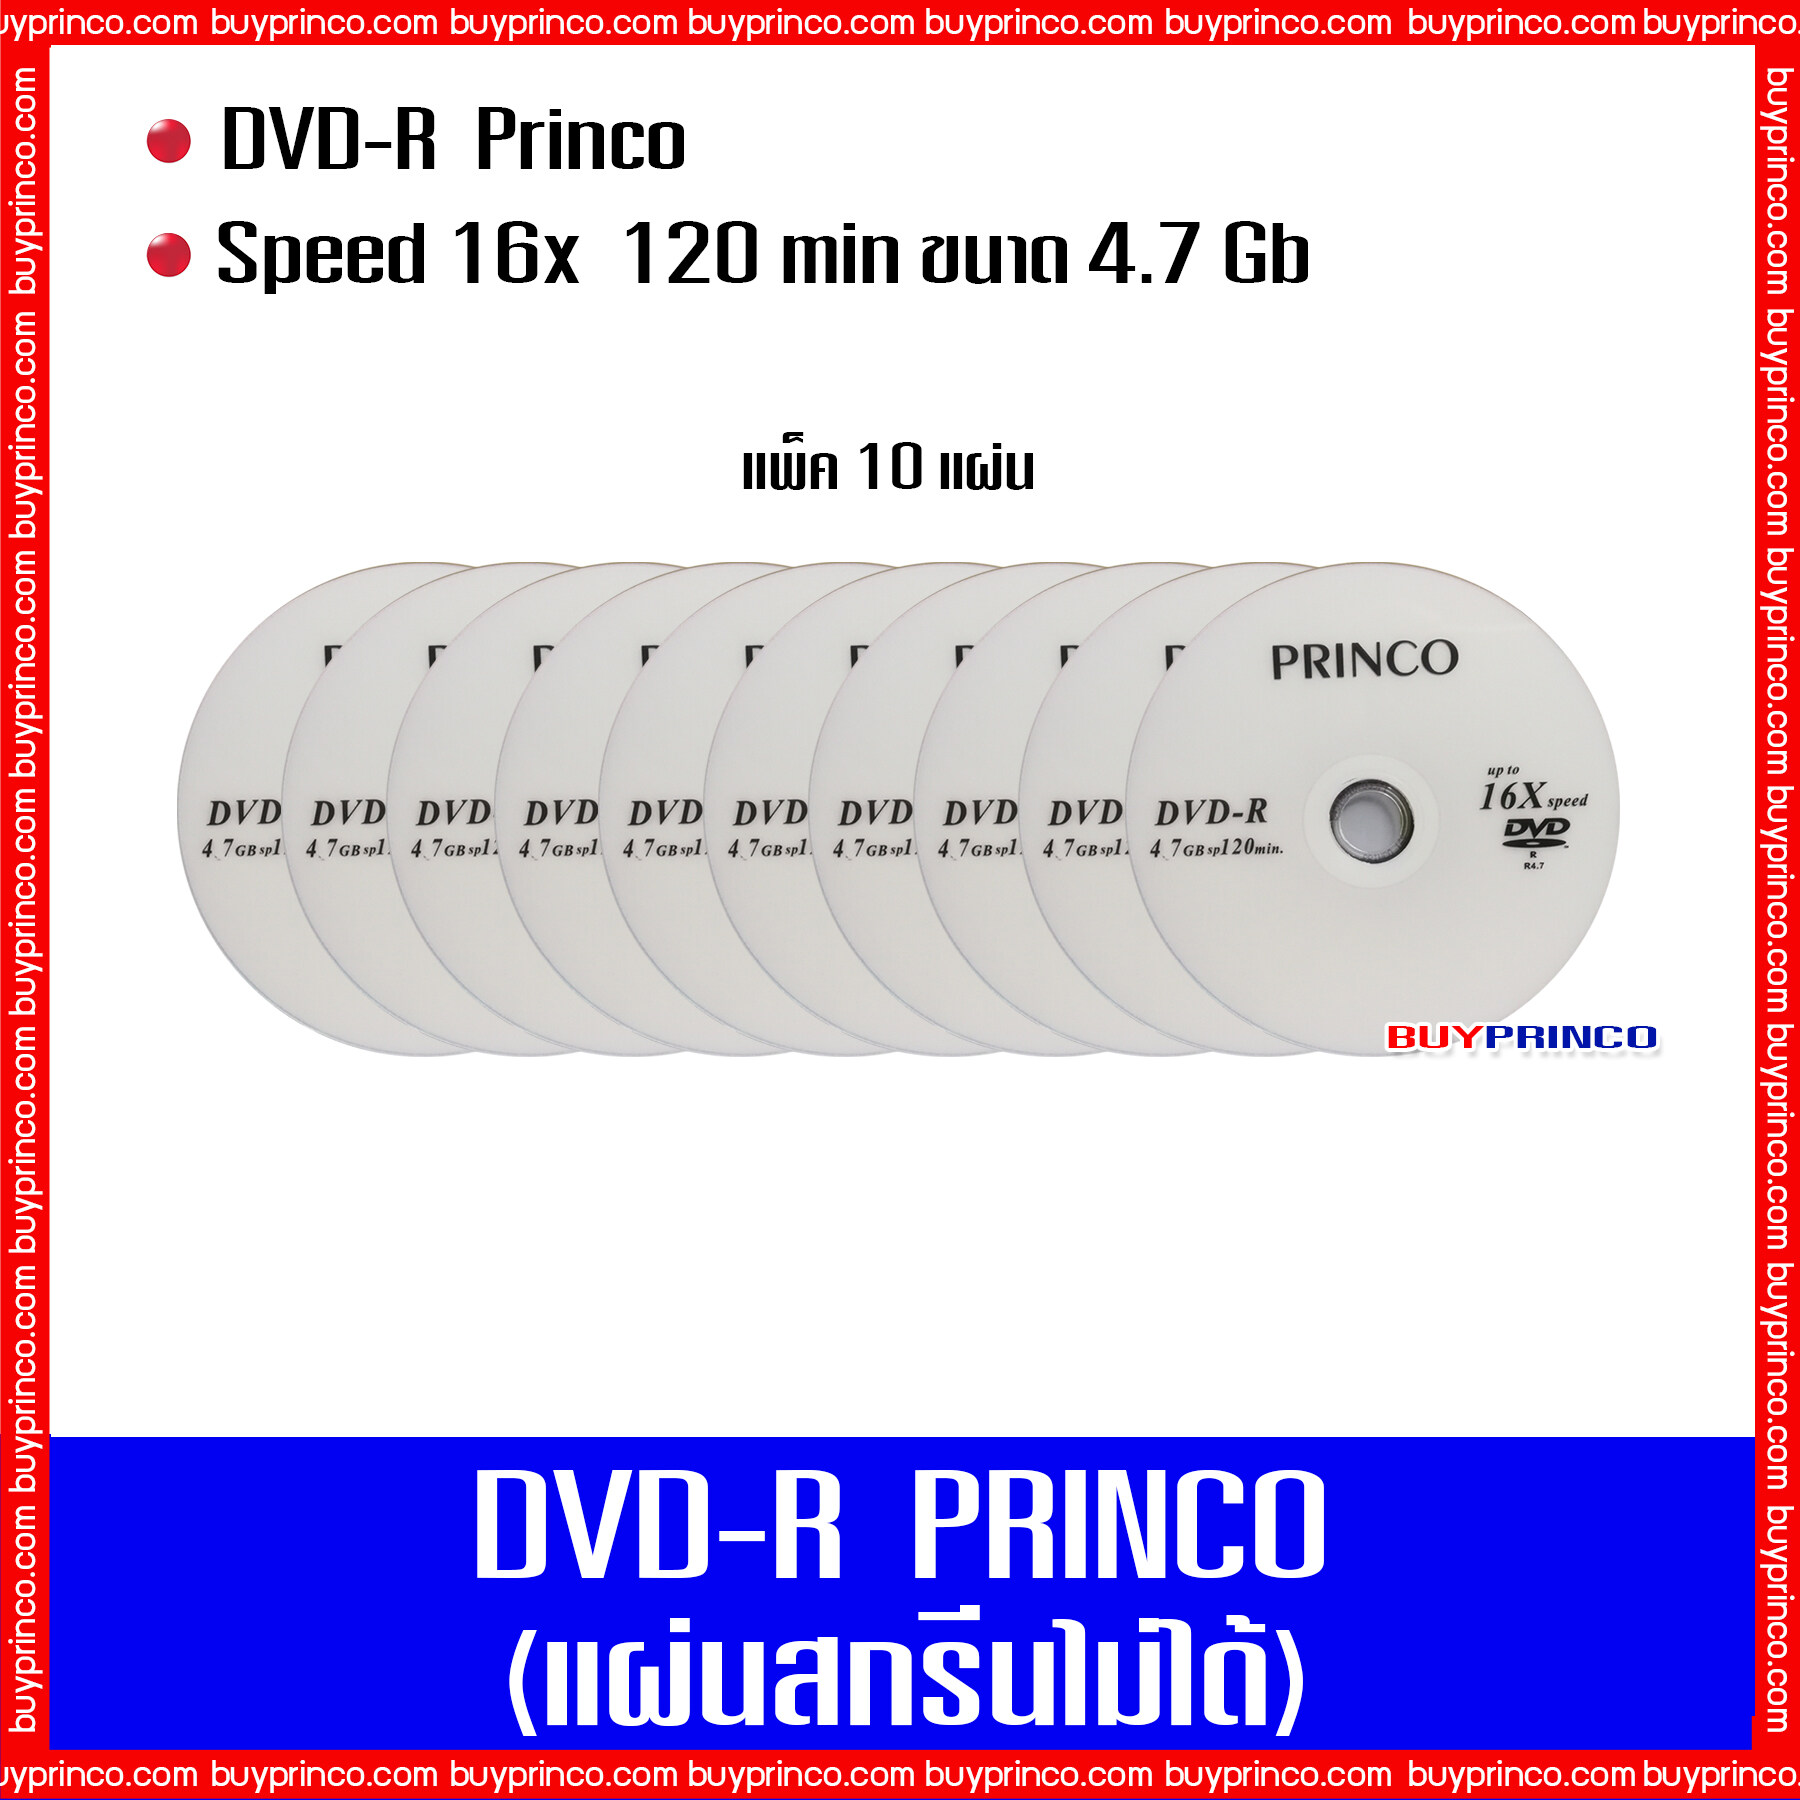 แผ่นดีวีดี พริงโก้ Dvd R Princo (10 แผ่น). 